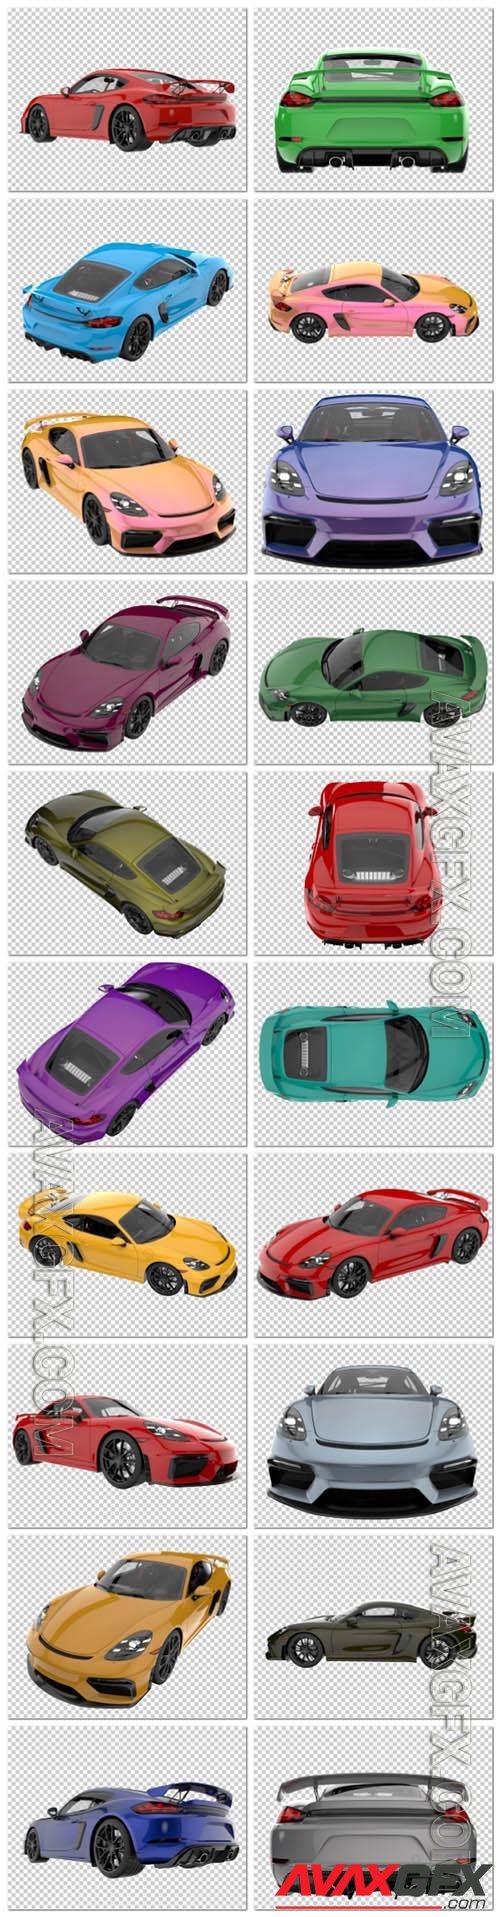 20 Sport car on transparent background, 3d rendering - illustration in psd vol 4